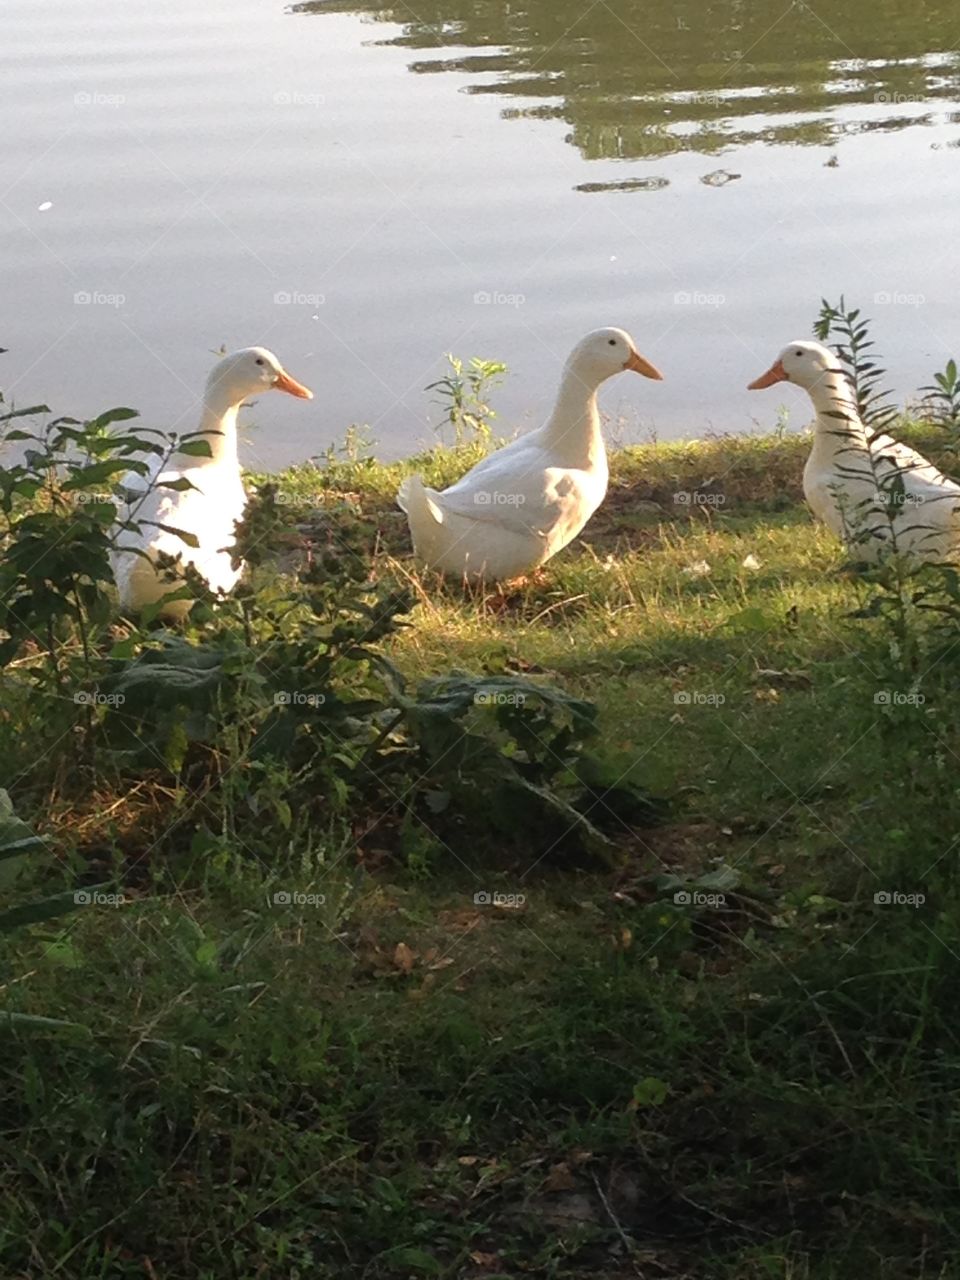 Rare white ducks in Oak Lawn, IL. Spring is here!